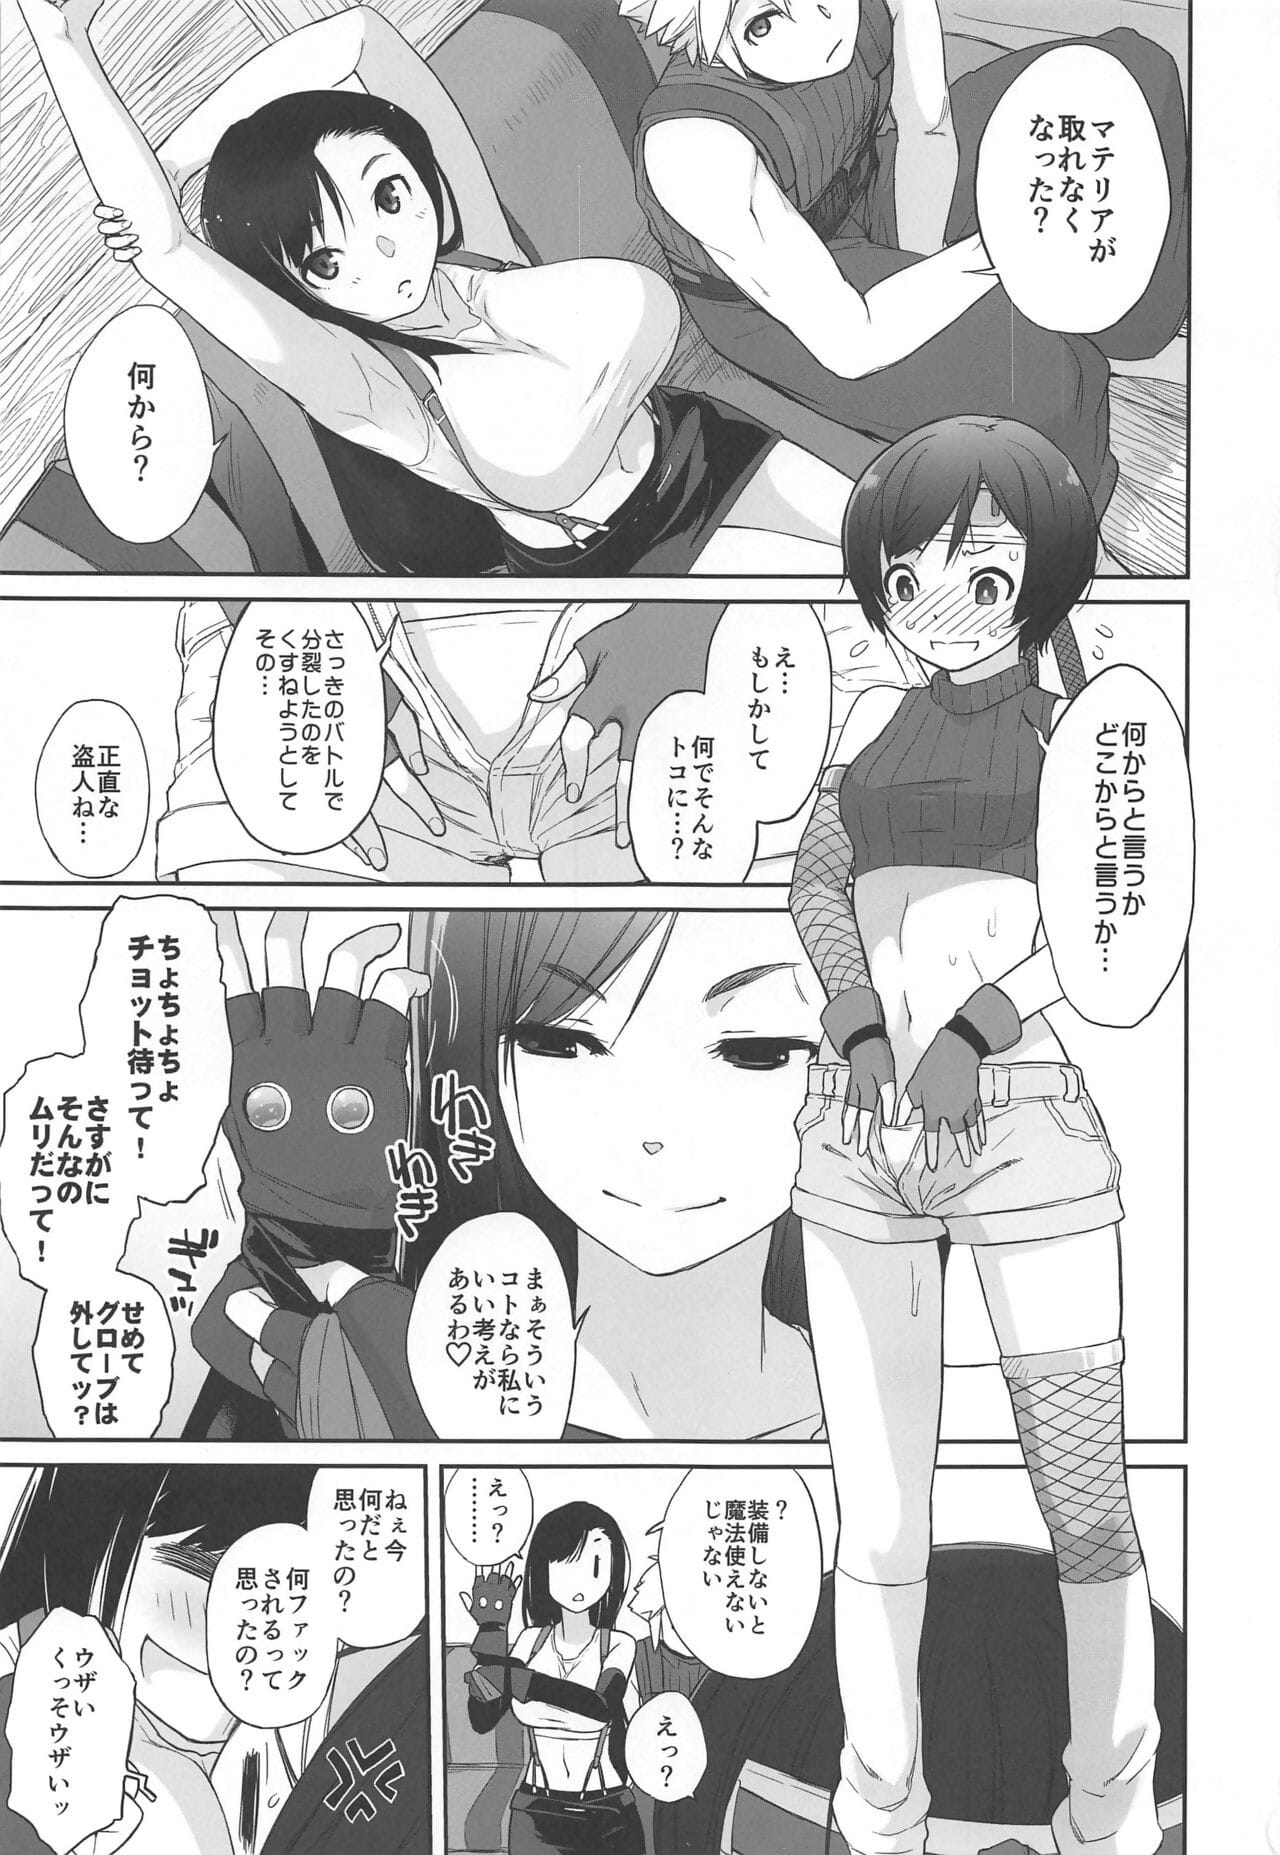 materia X Fille #2 tifa pas de minimum daisakusen! page 1